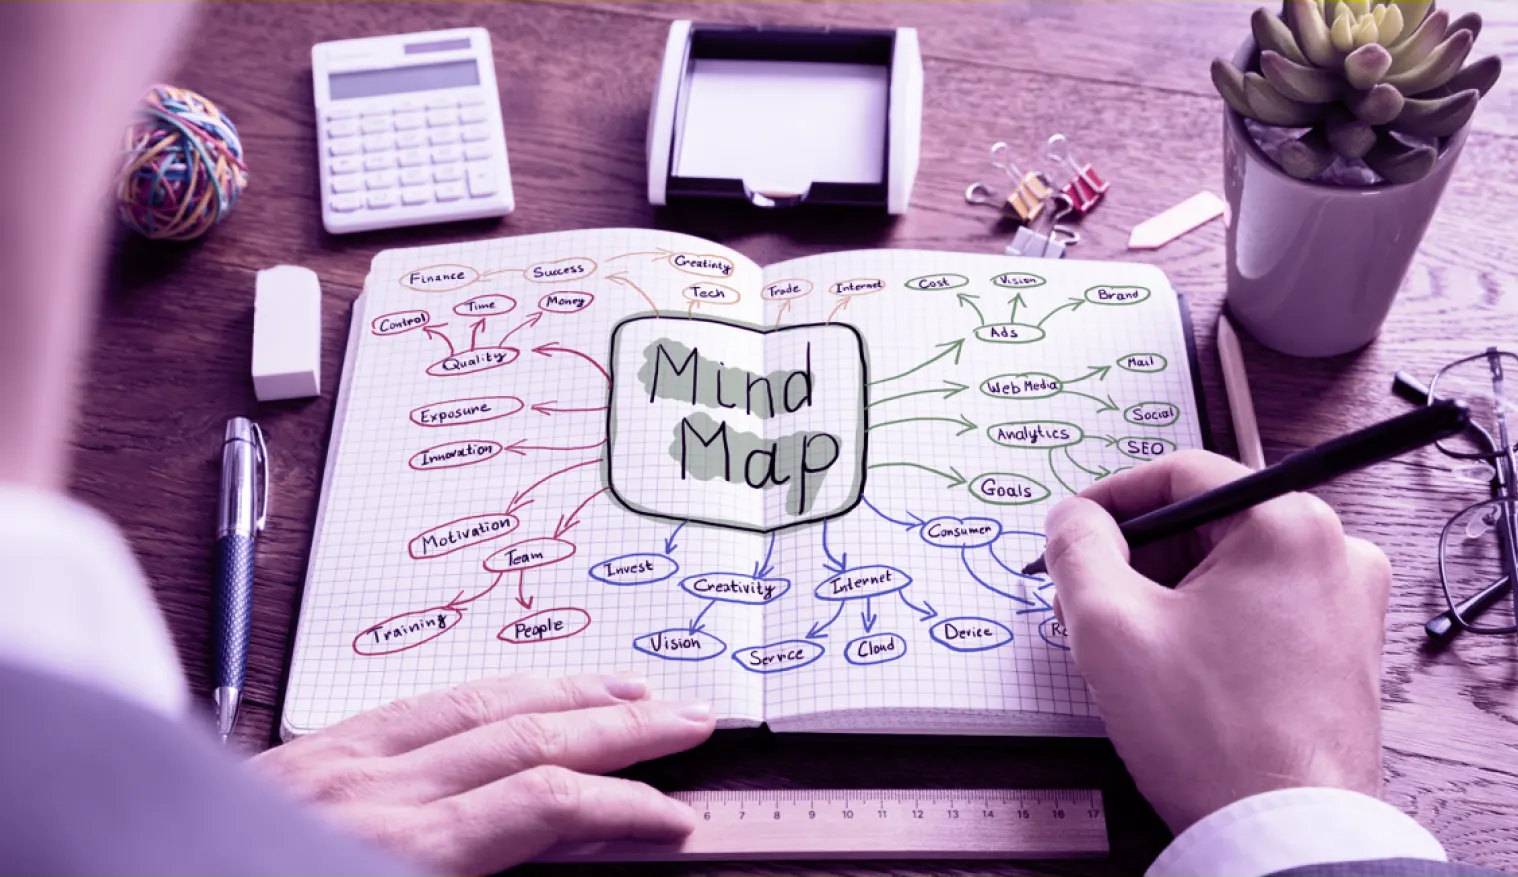 نقشه ذهنی یا Mind Map چیست و چه کاربردی در یادگیری دارد؟ | بوکاپو